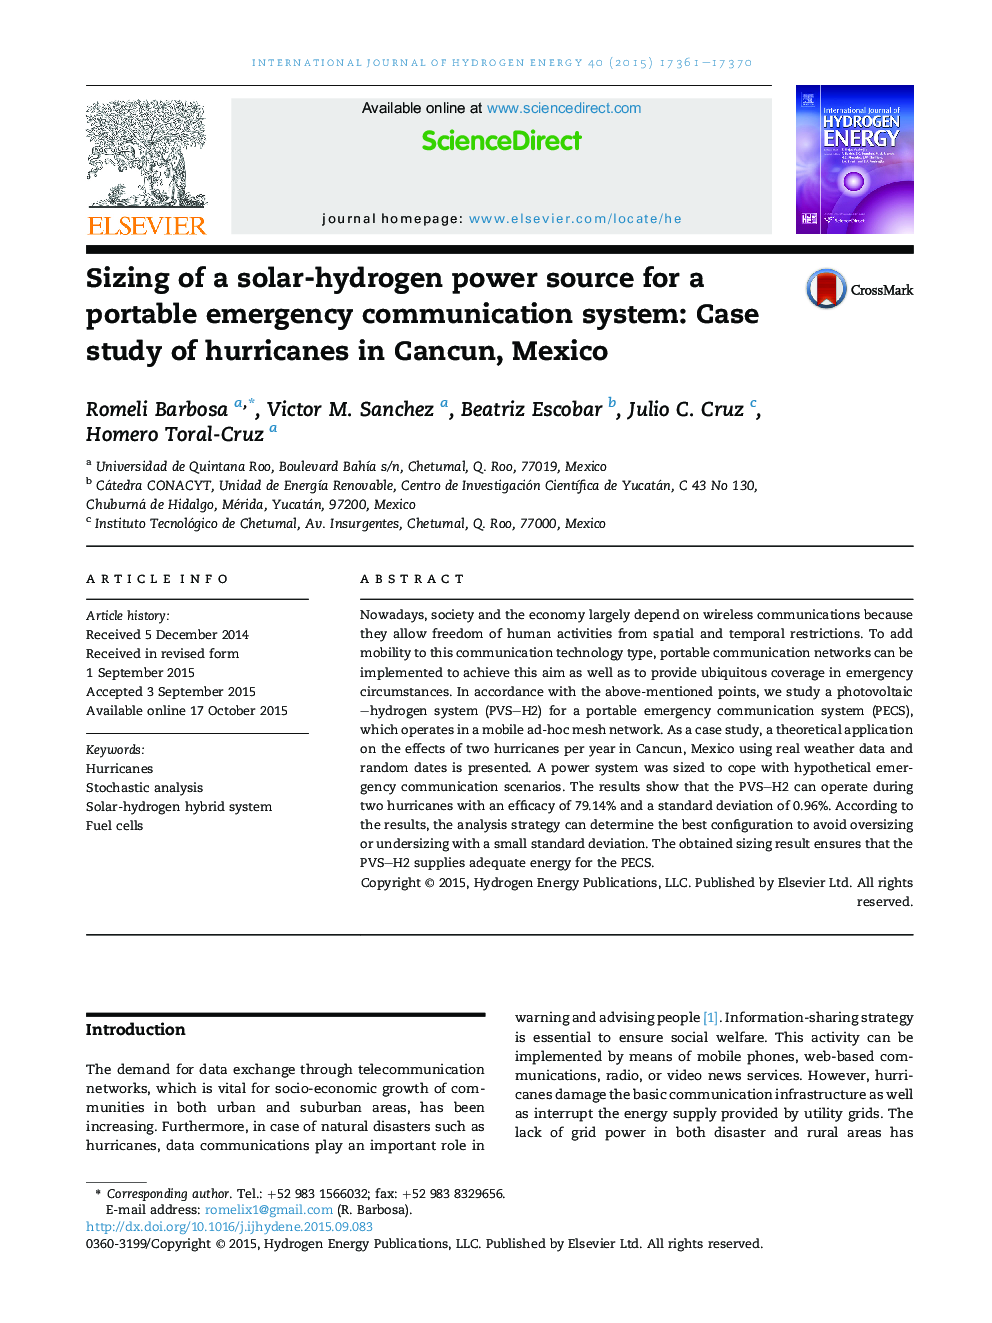 اندازه گیری منبع انرژی خورشیدی-هیدروژن برای یک سیستم ارتباطی اورژانس قابل حمل: مطالعه موردی طوفان ها در کانکون، مکزیک 